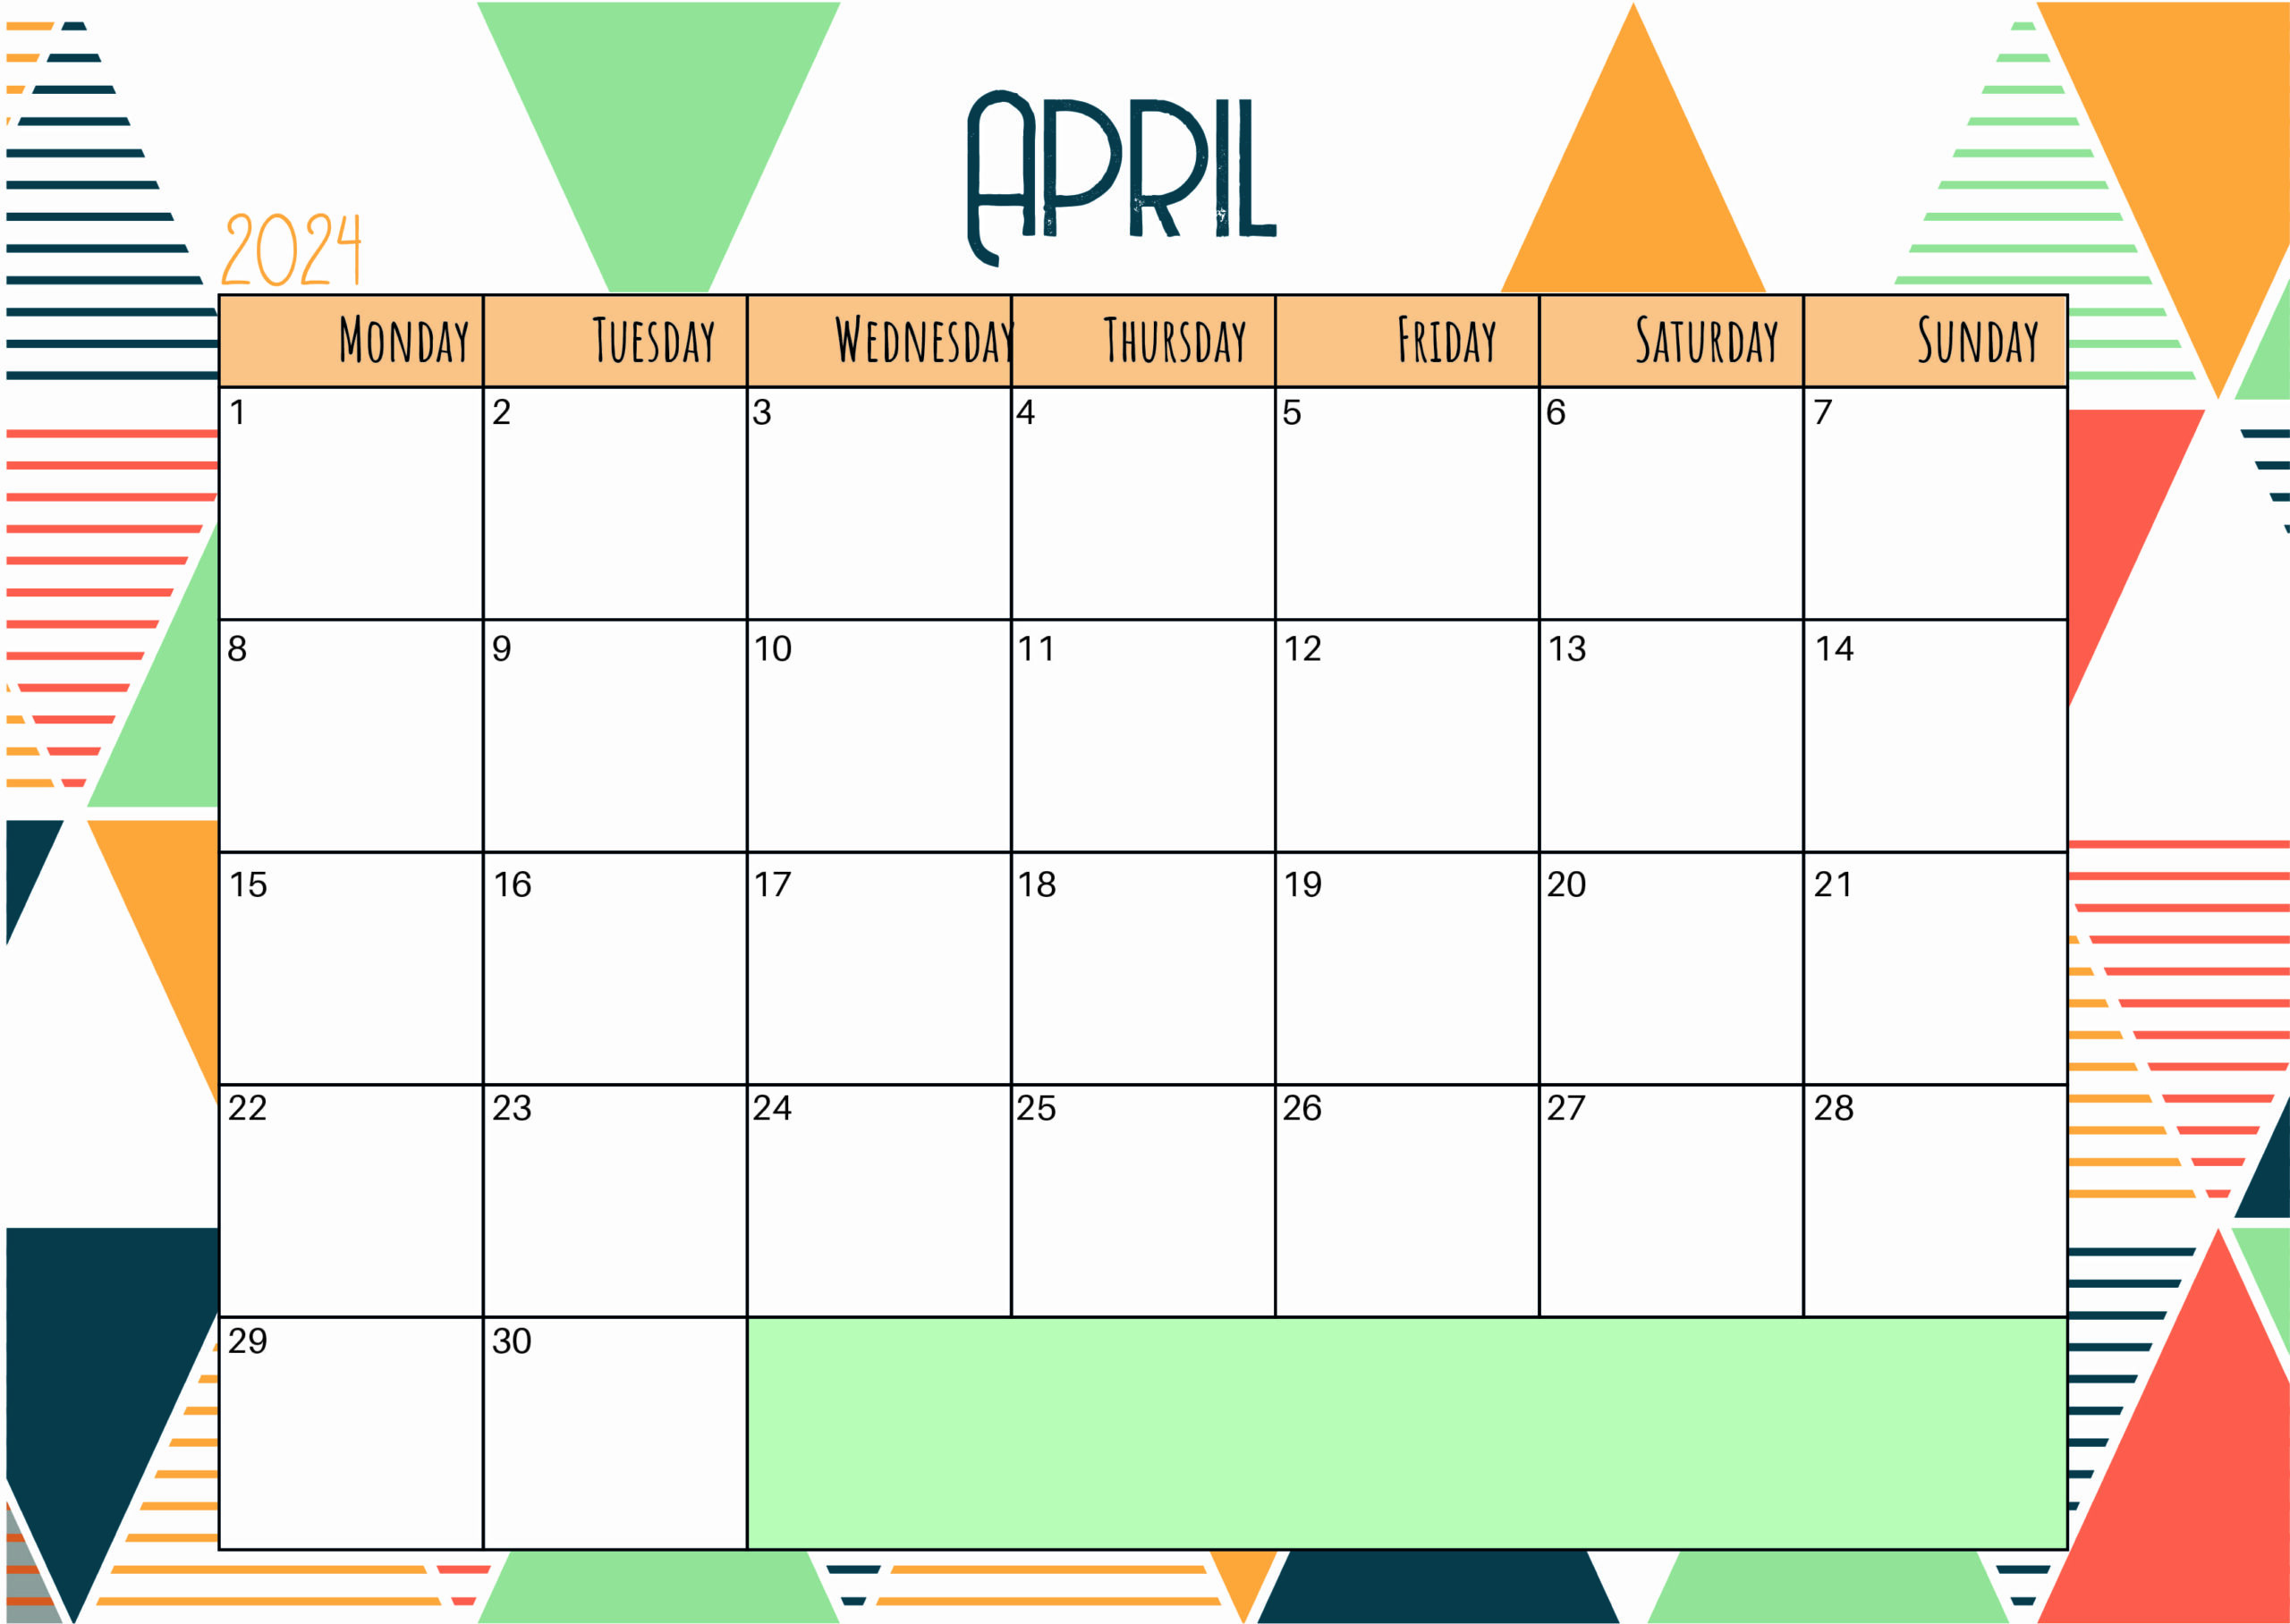 April 2024 Calendar for Printing